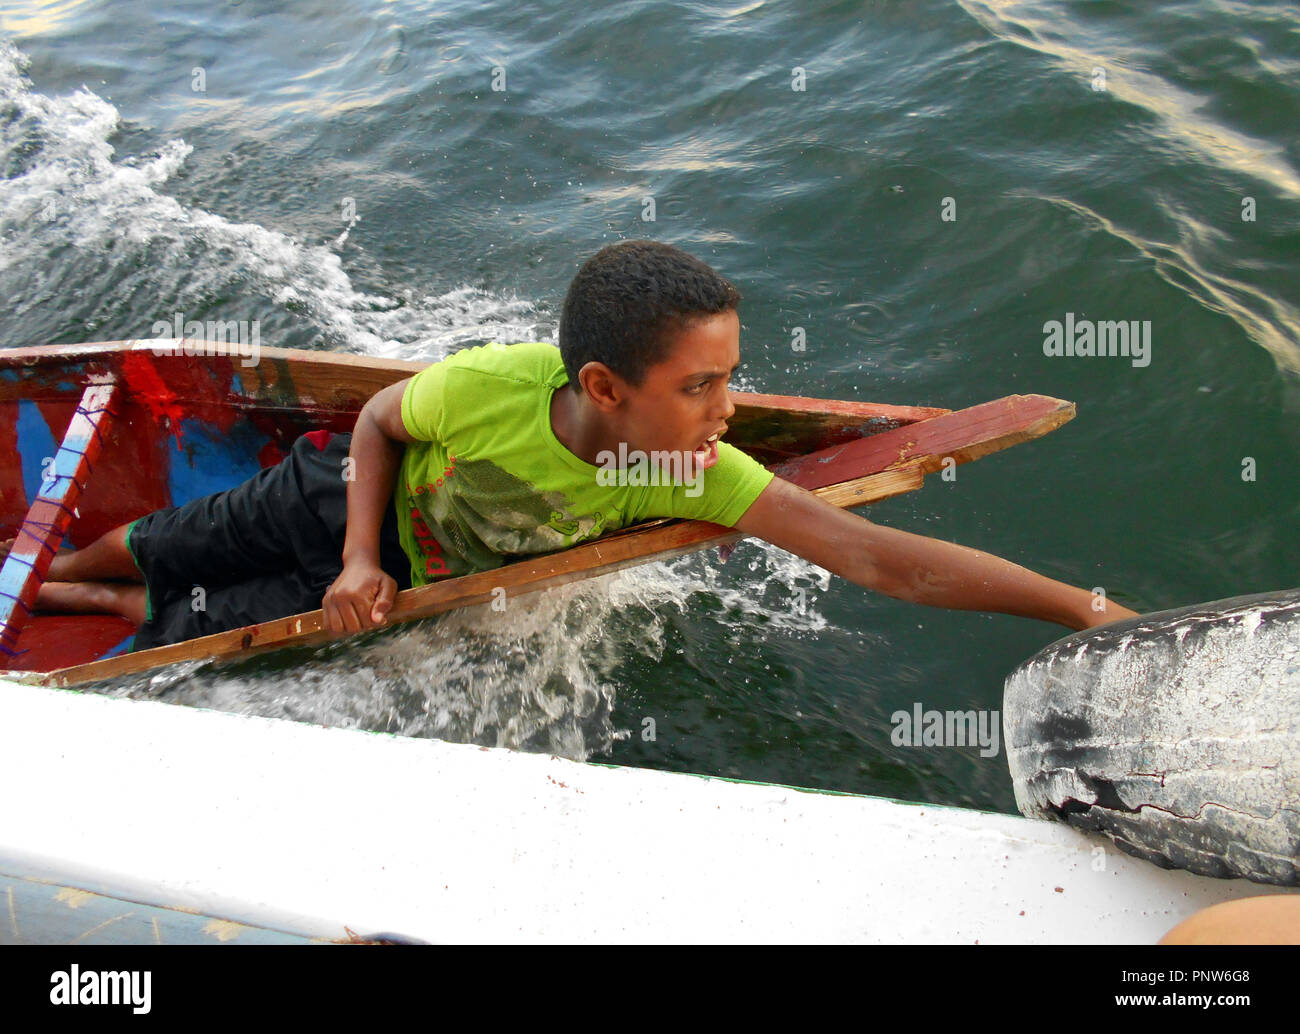 Un garçon égyptien, dans son propre petit bateau, s'accroche sur le côté d'un navire de croisière, l'attelage d'une balade sur le Nil en Egypte. Banque D'Images